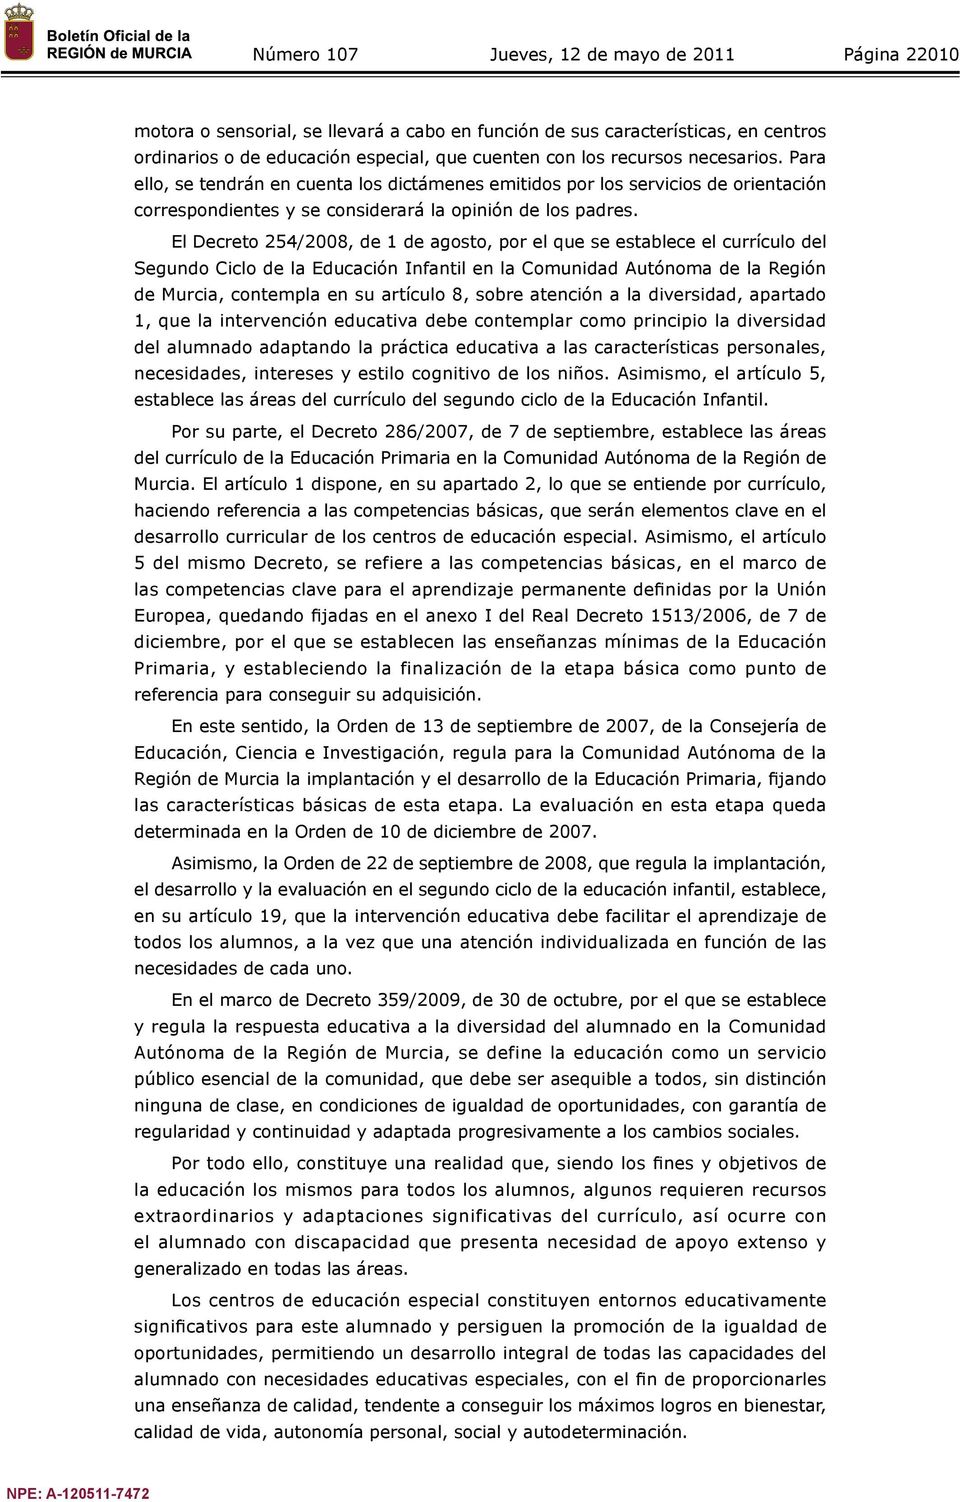 El Decreto 254/2008, de 1 de agosto, por el que se establece el currículo del Segundo Ciclo de la Educación Infantil en la Comunidad Autónoma de la Región de Murcia, contempla en su artículo 8, sobre